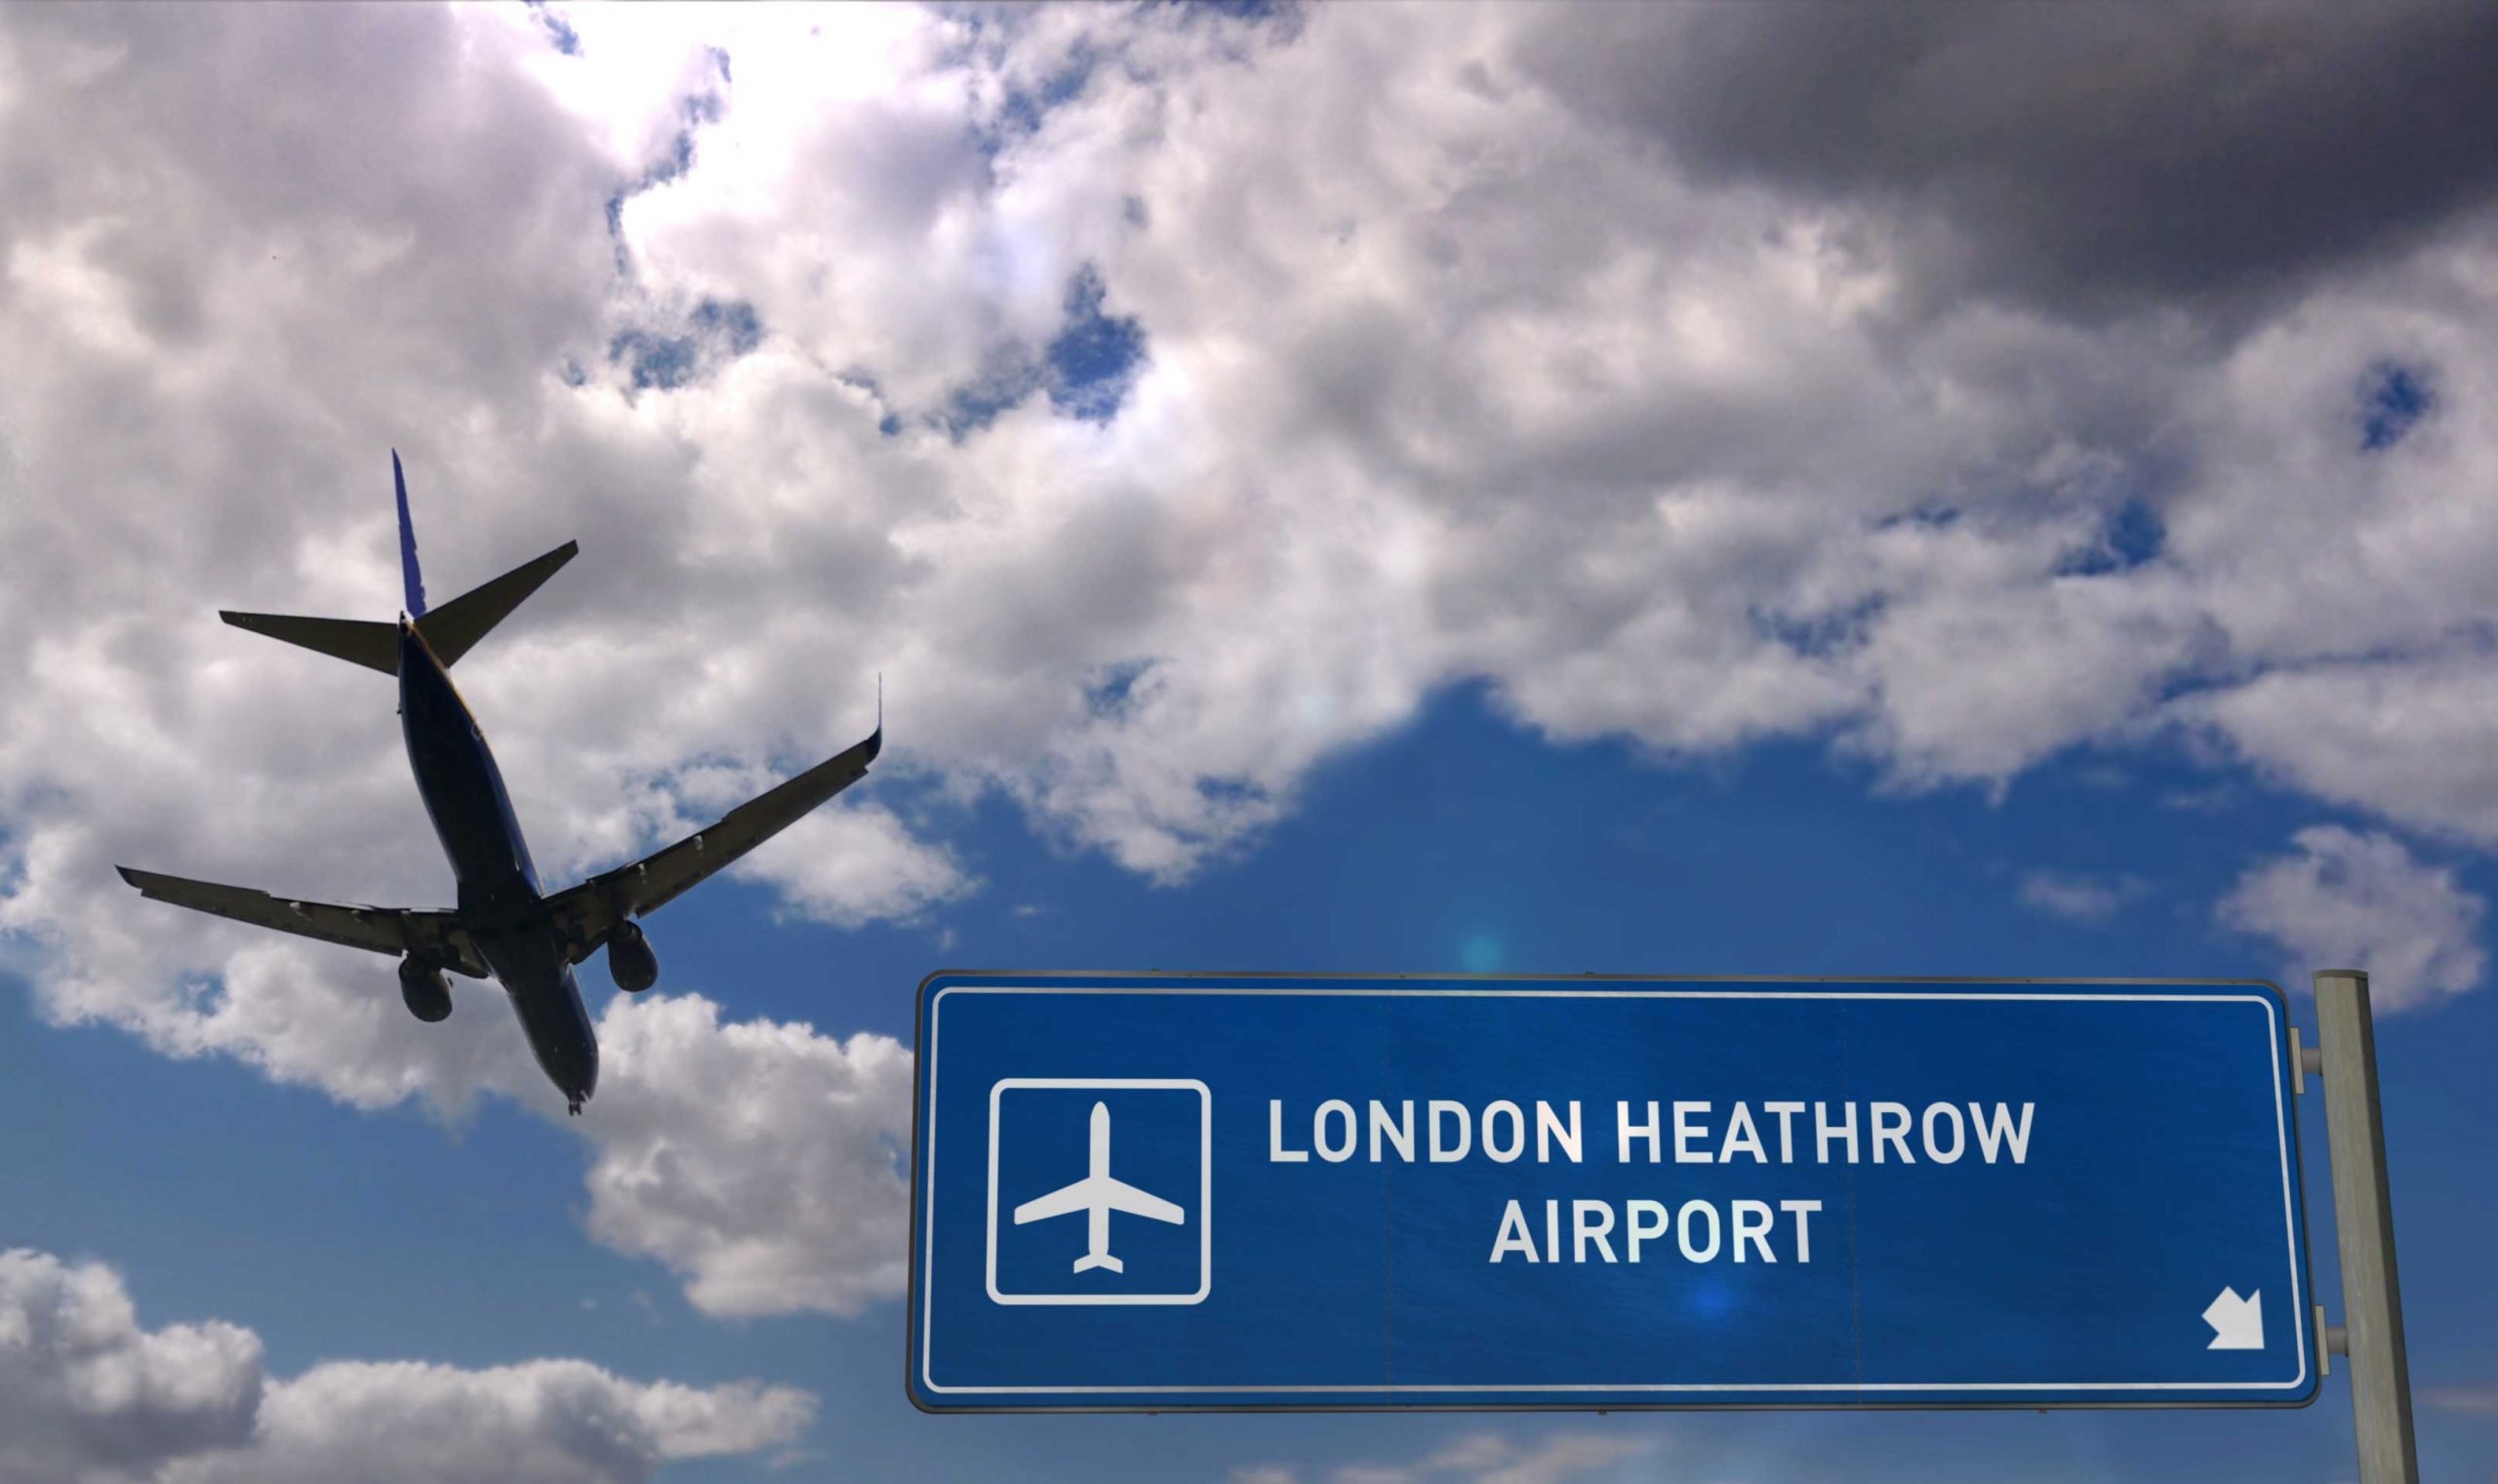 London Heathrow Airport, Baggage handlers strike, Pay rate dispute, Travel disruptions, 2560x1530 HD Desktop